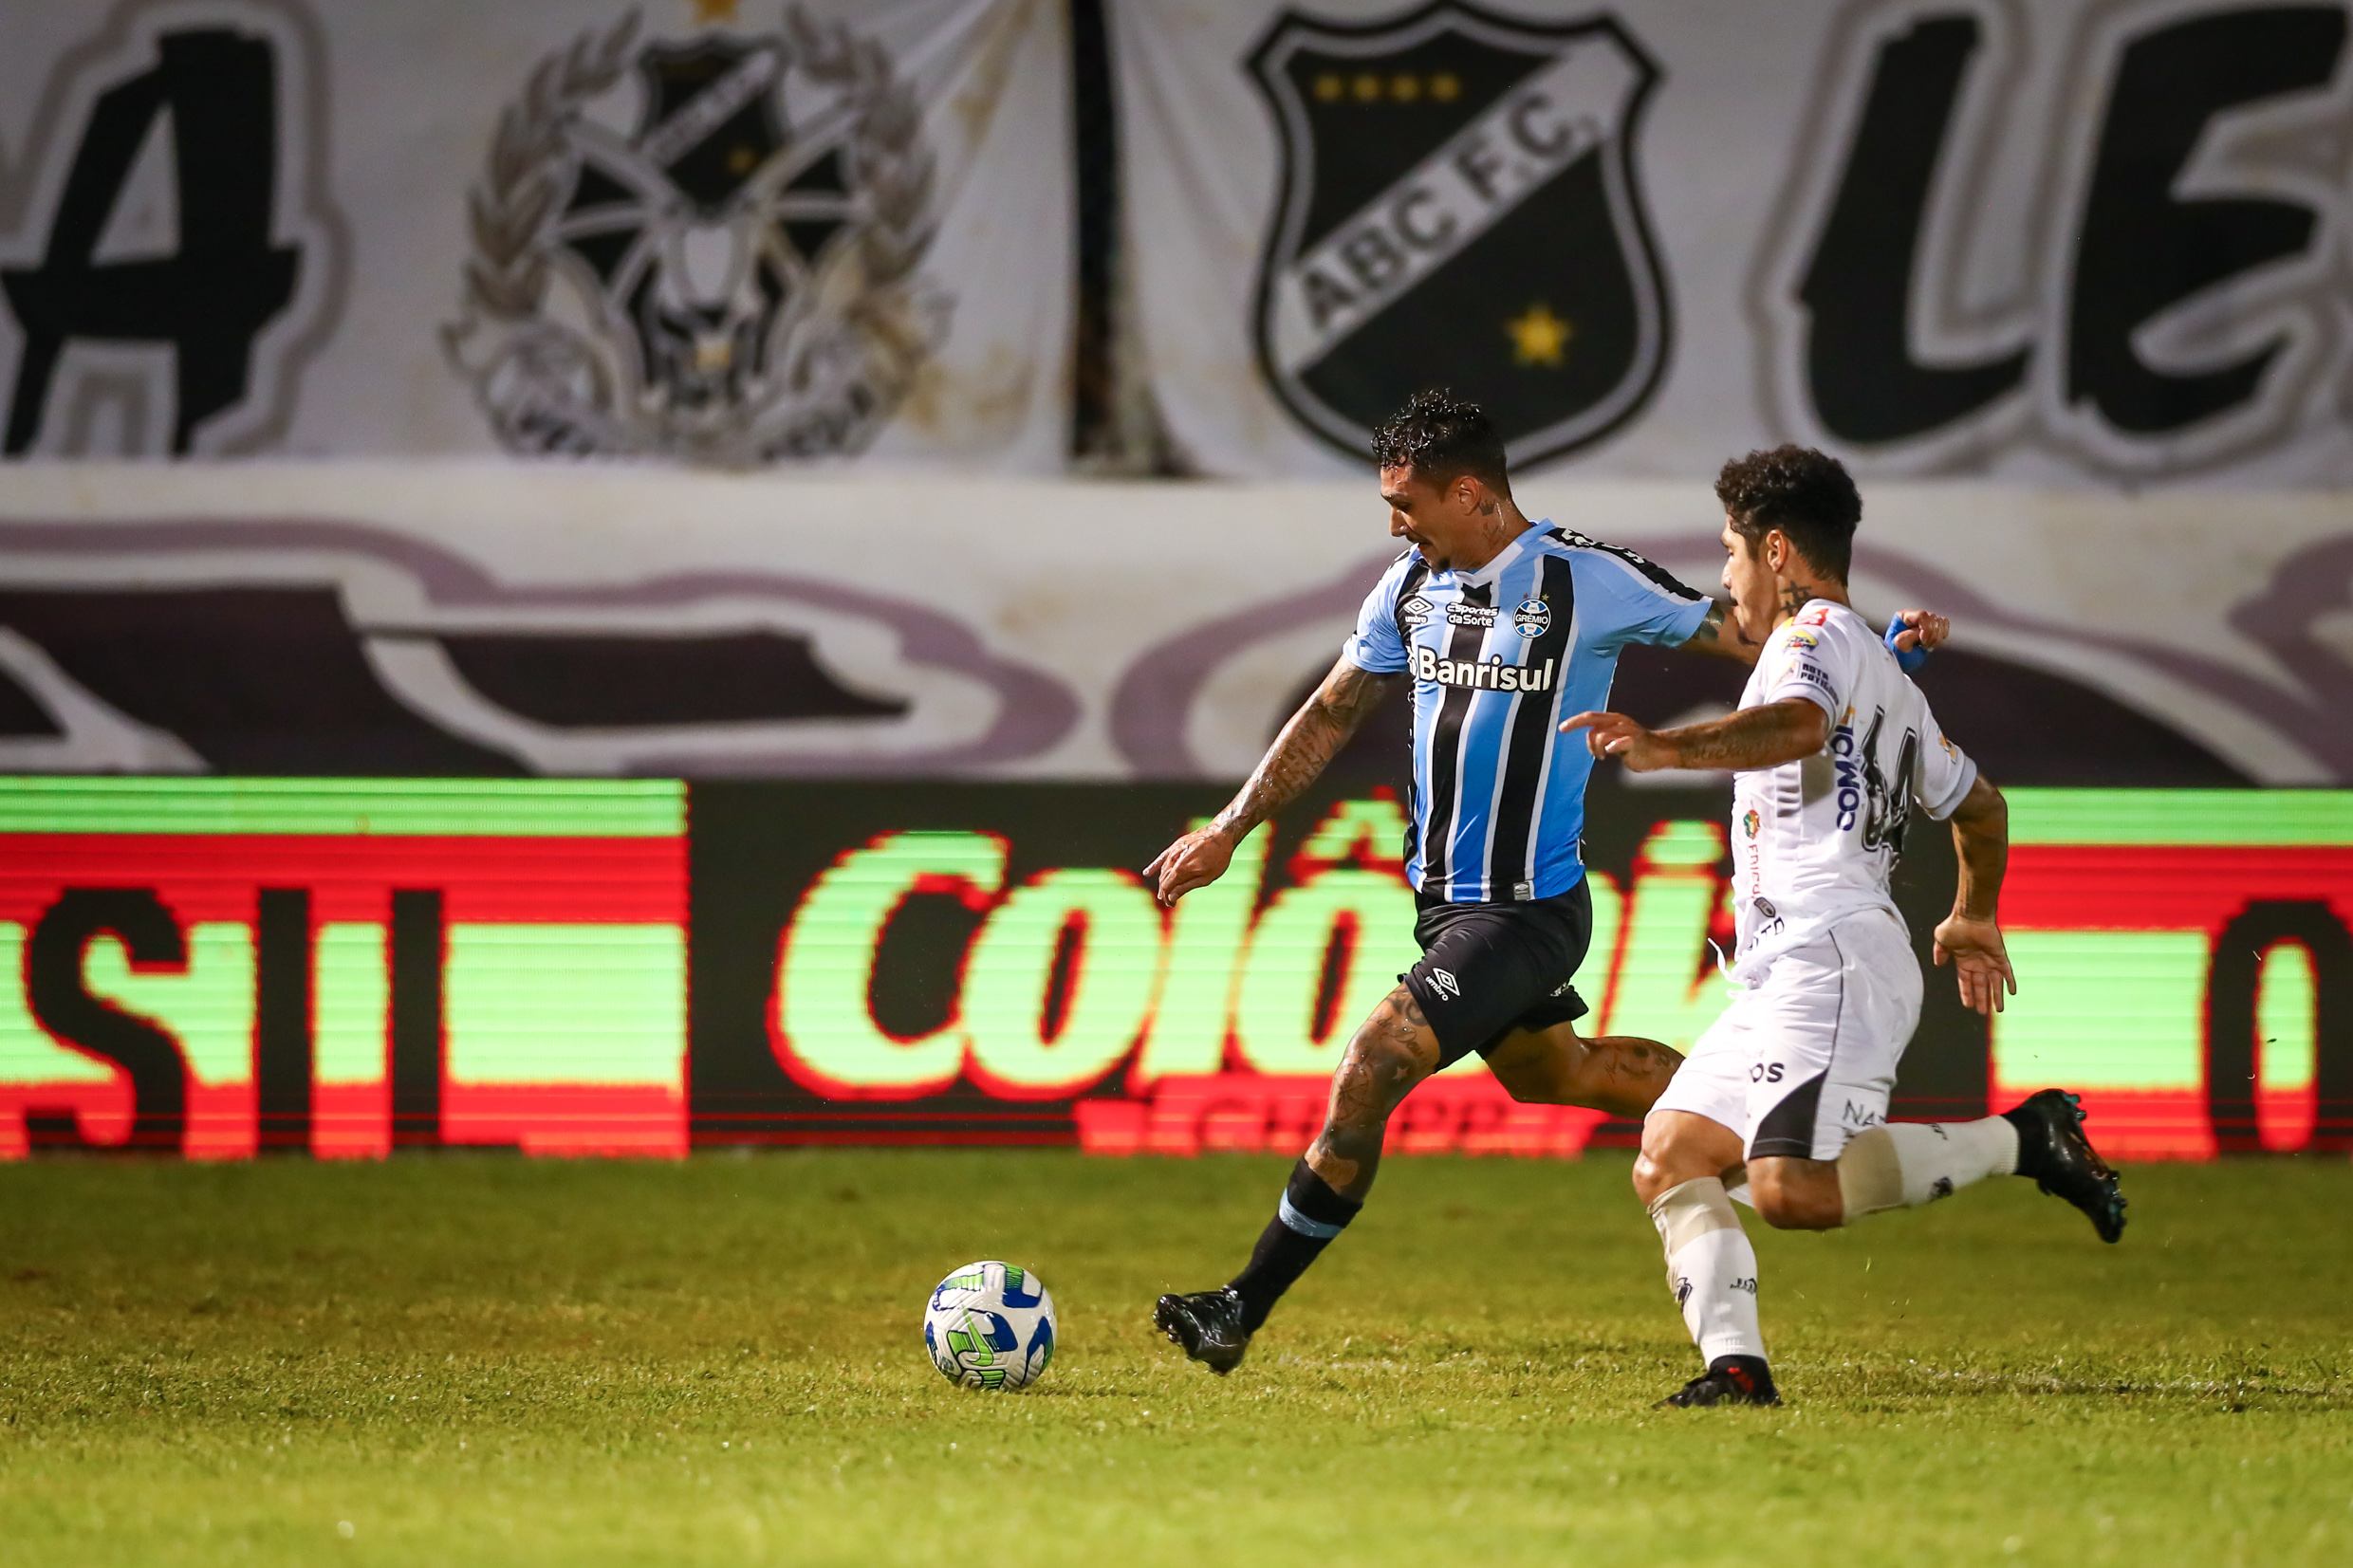 Grêmio vs ABC: A Clash of Titans on the Football Field